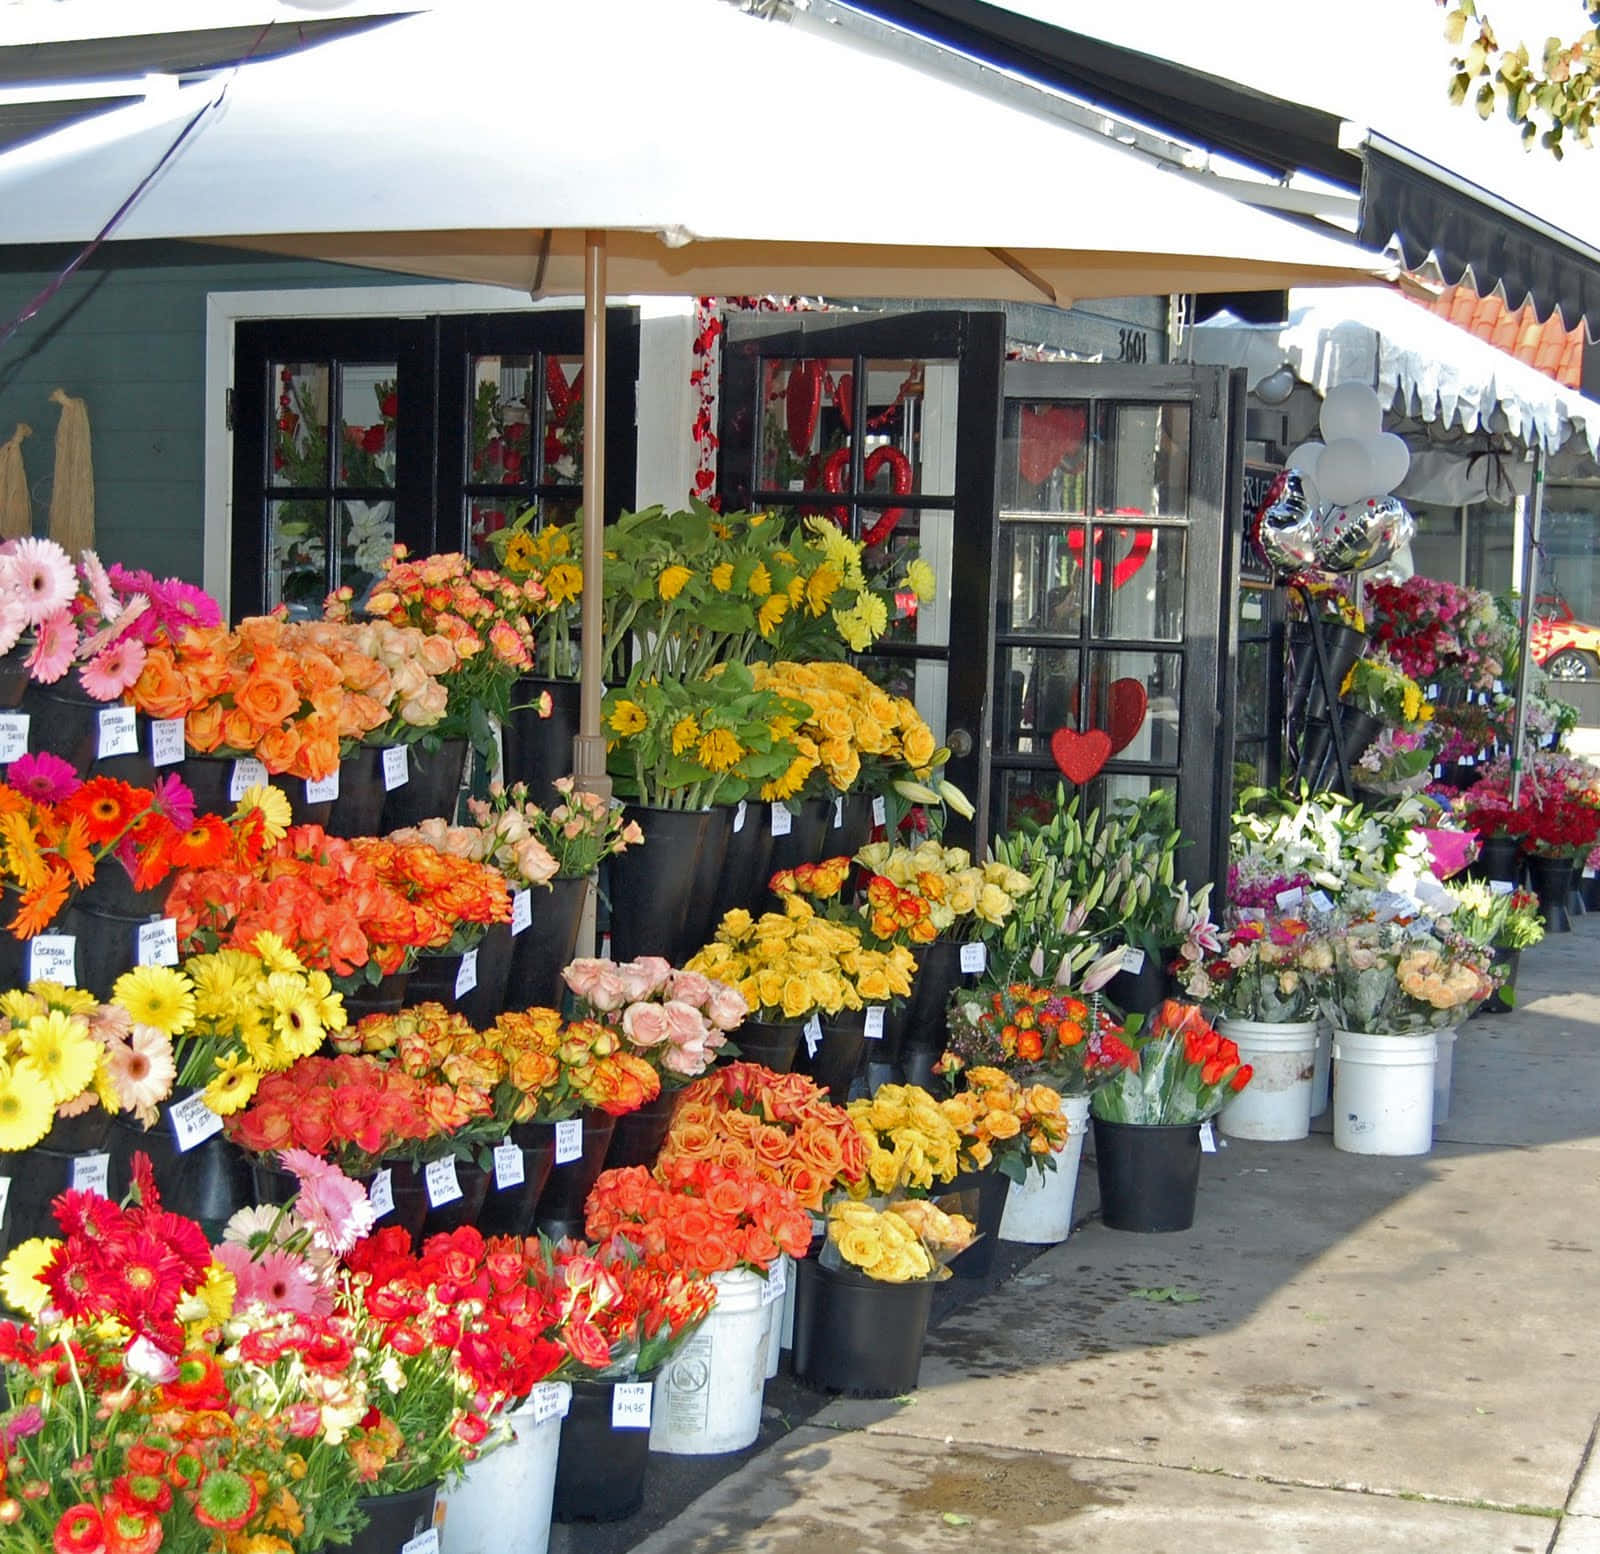 Vibrant Flower Market in Full Bloom Wallpaper